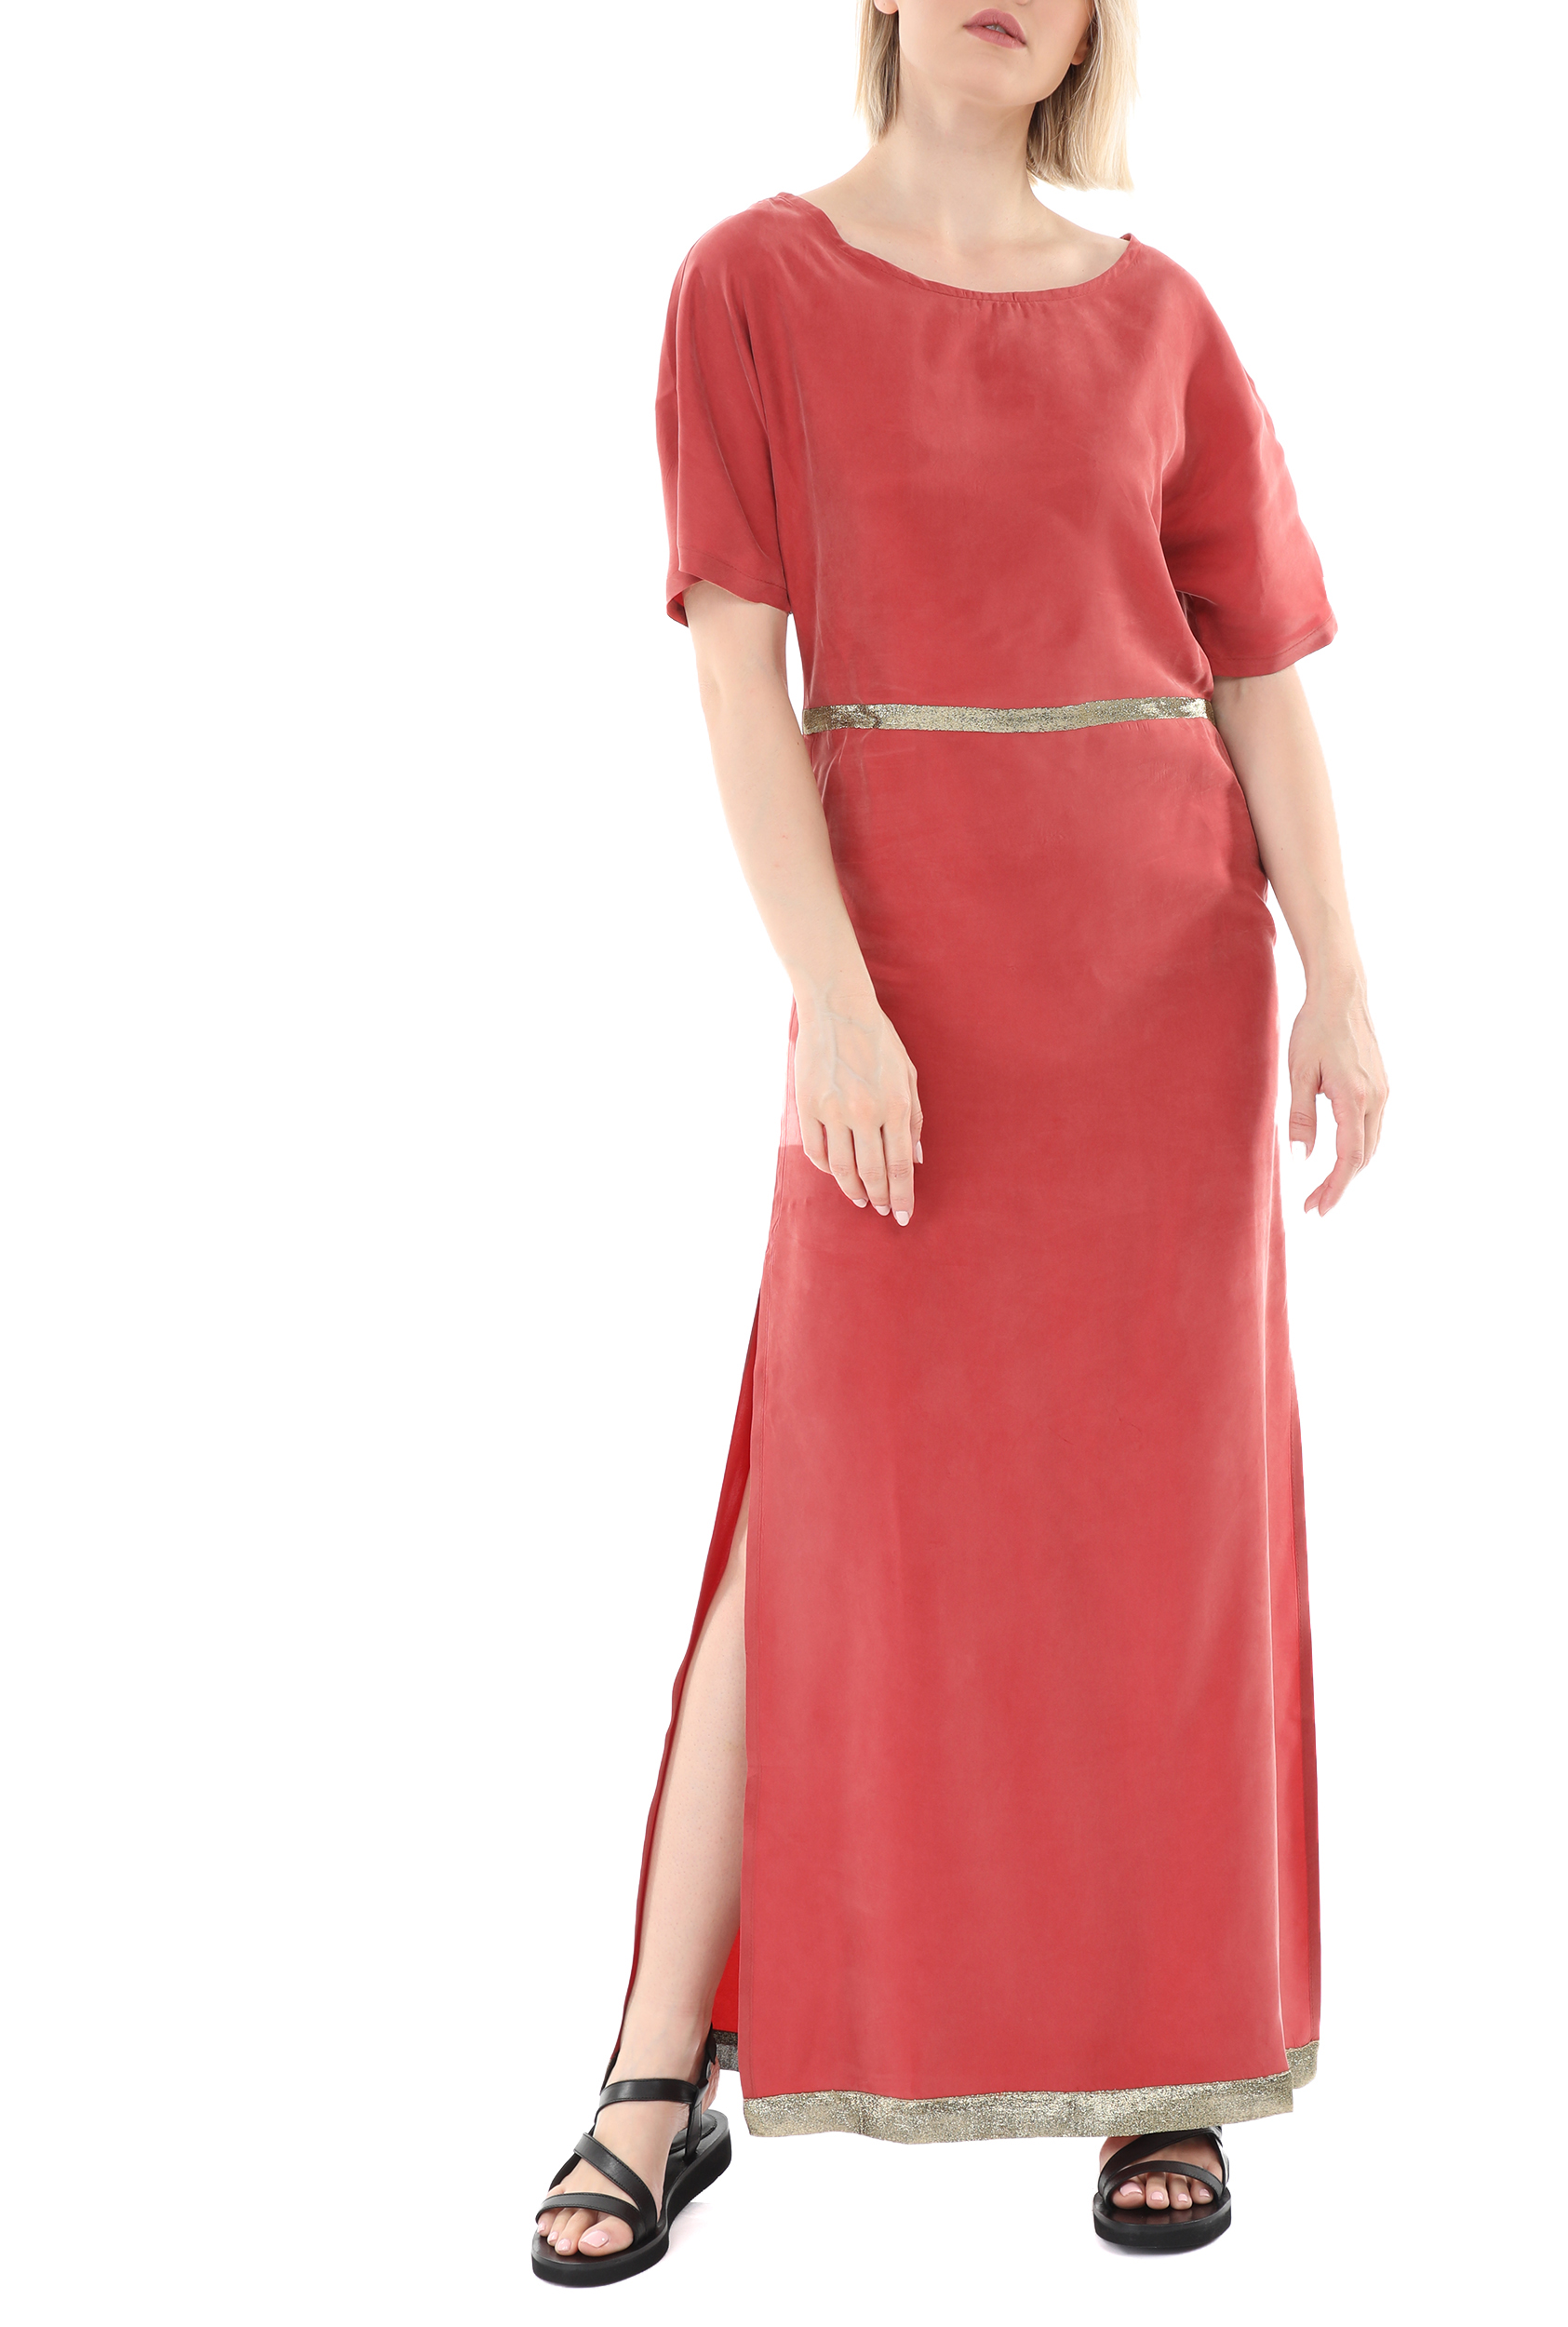 Γυναικεία/Ρούχα/Φορέματα/Μάξι GLAMAZONS - Γυναικείο μακρύ φόρεμα GLAMAZONS TINOS κόκκινο χρυσό